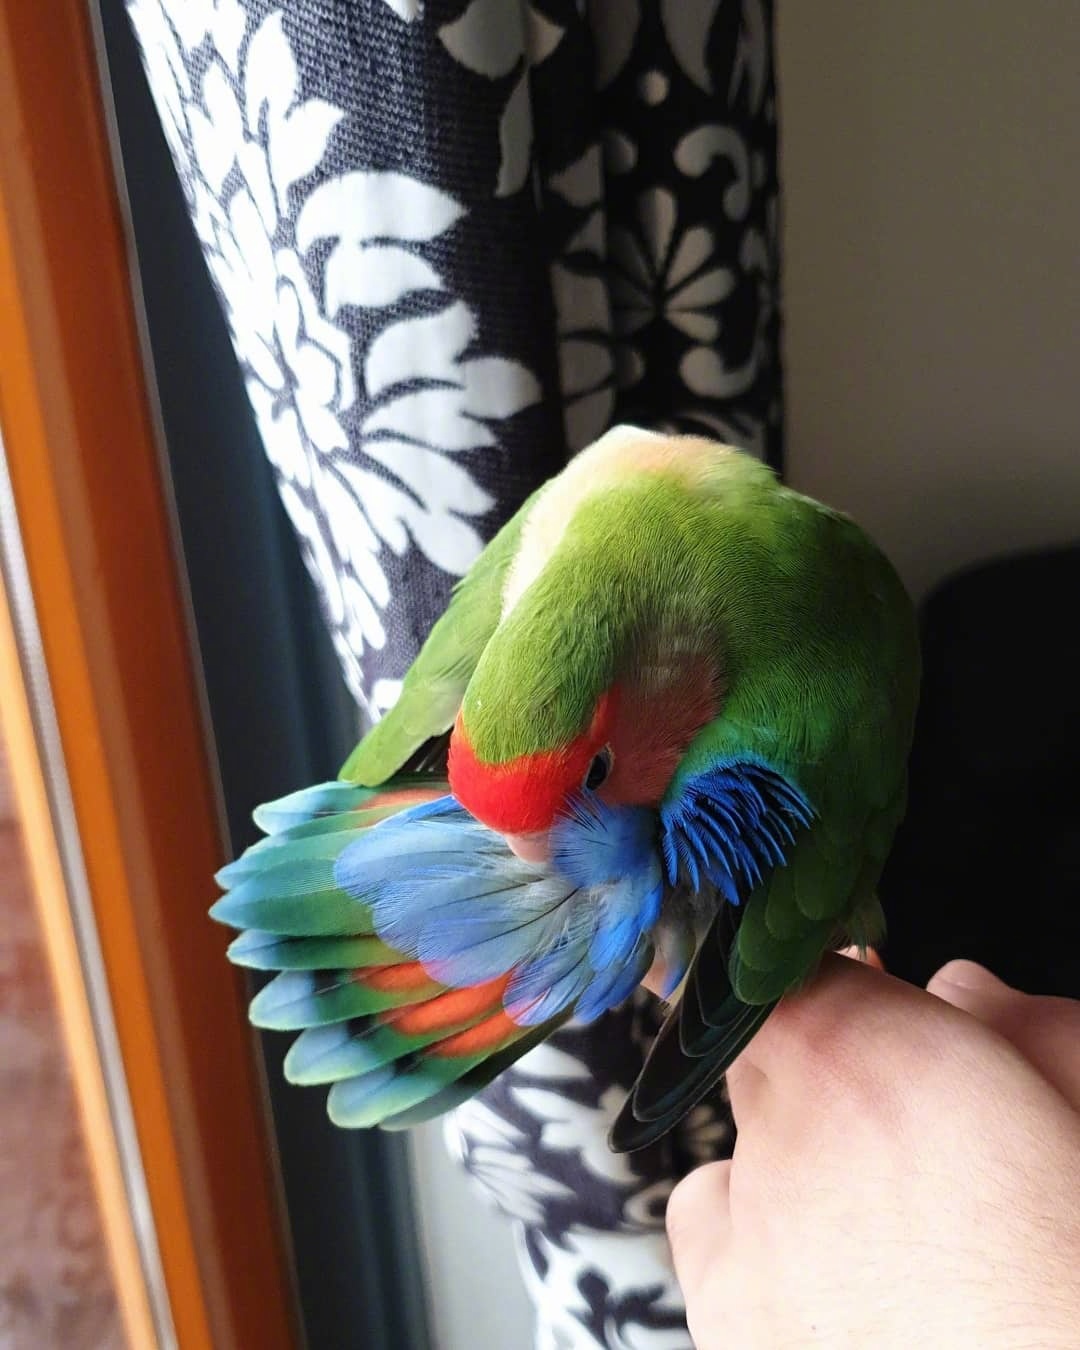 漂亮可爱的绿桃鹦鹉有趣活泼,鲜艳的羽毛太亮眼了!